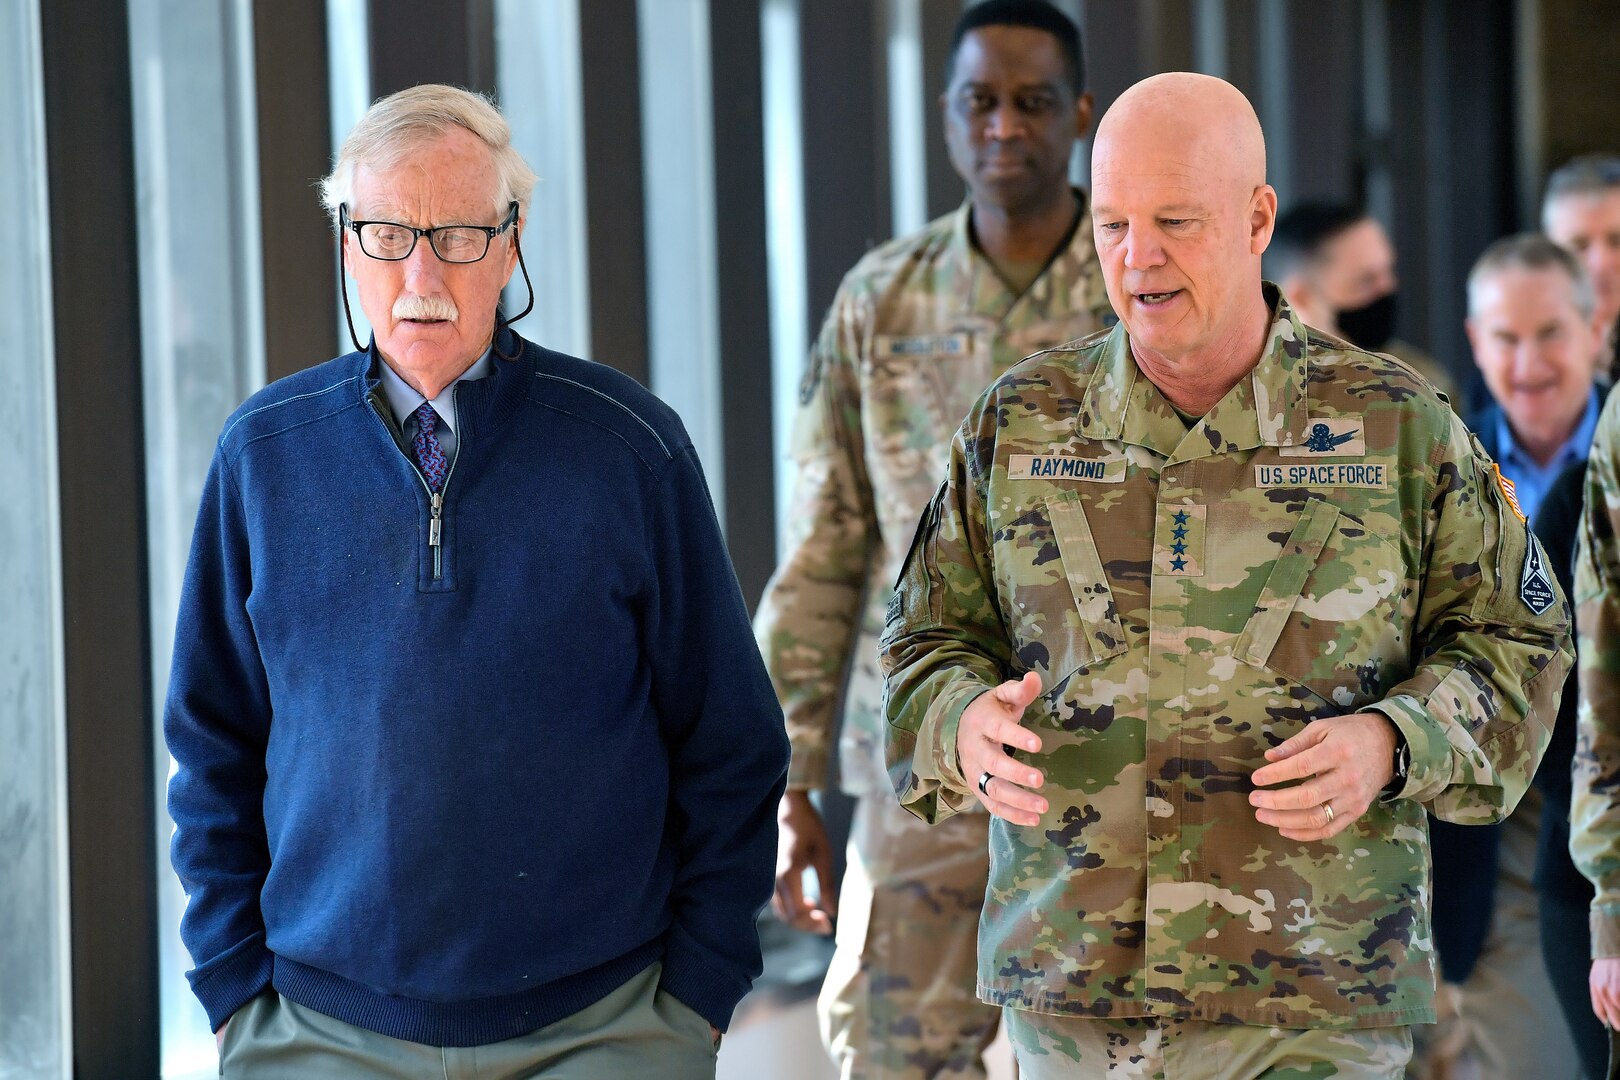 Military members brief senator in walkway